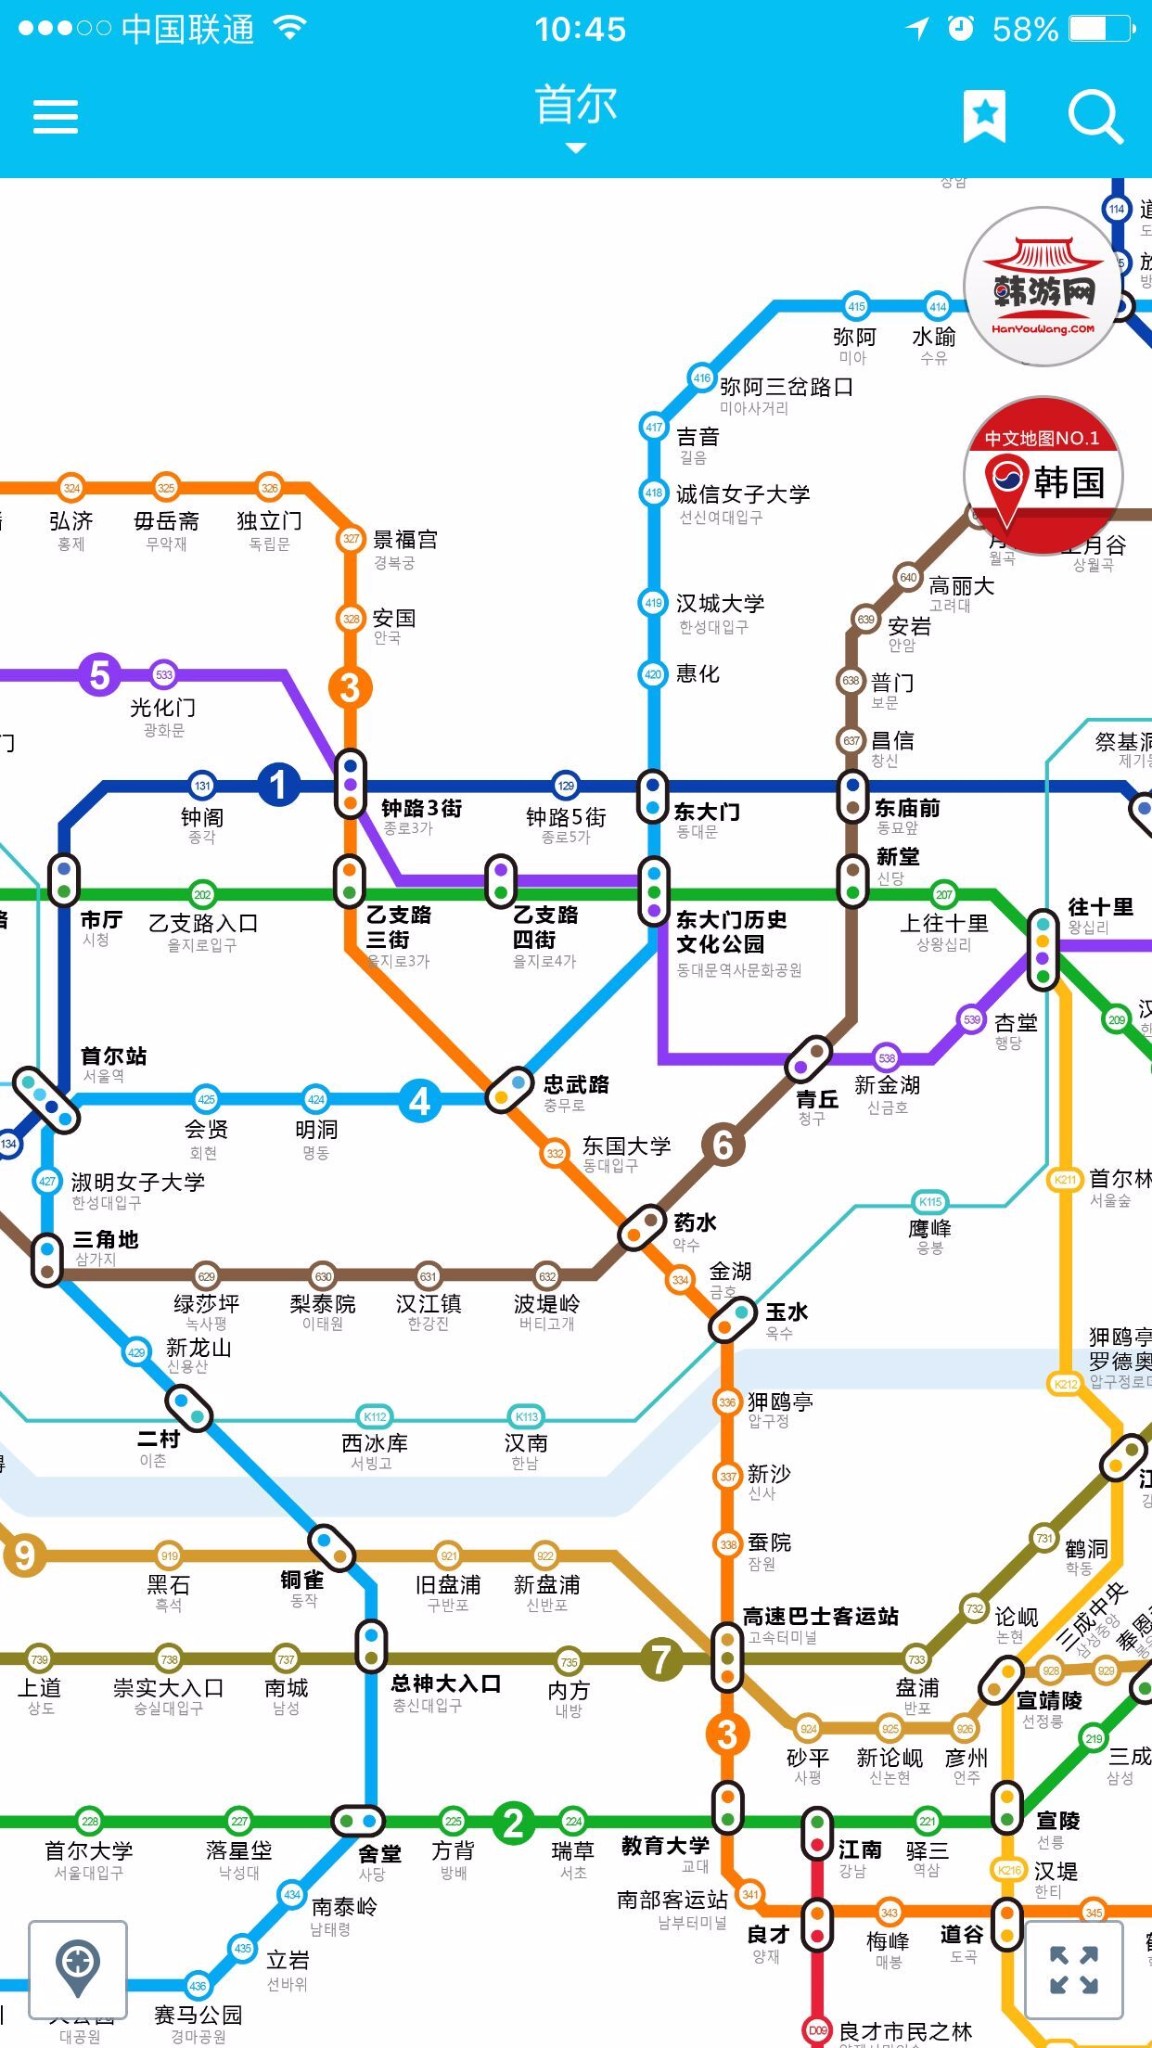 谁有韩国地铁图,中韩文字的?有详细的关于韩国手册吗